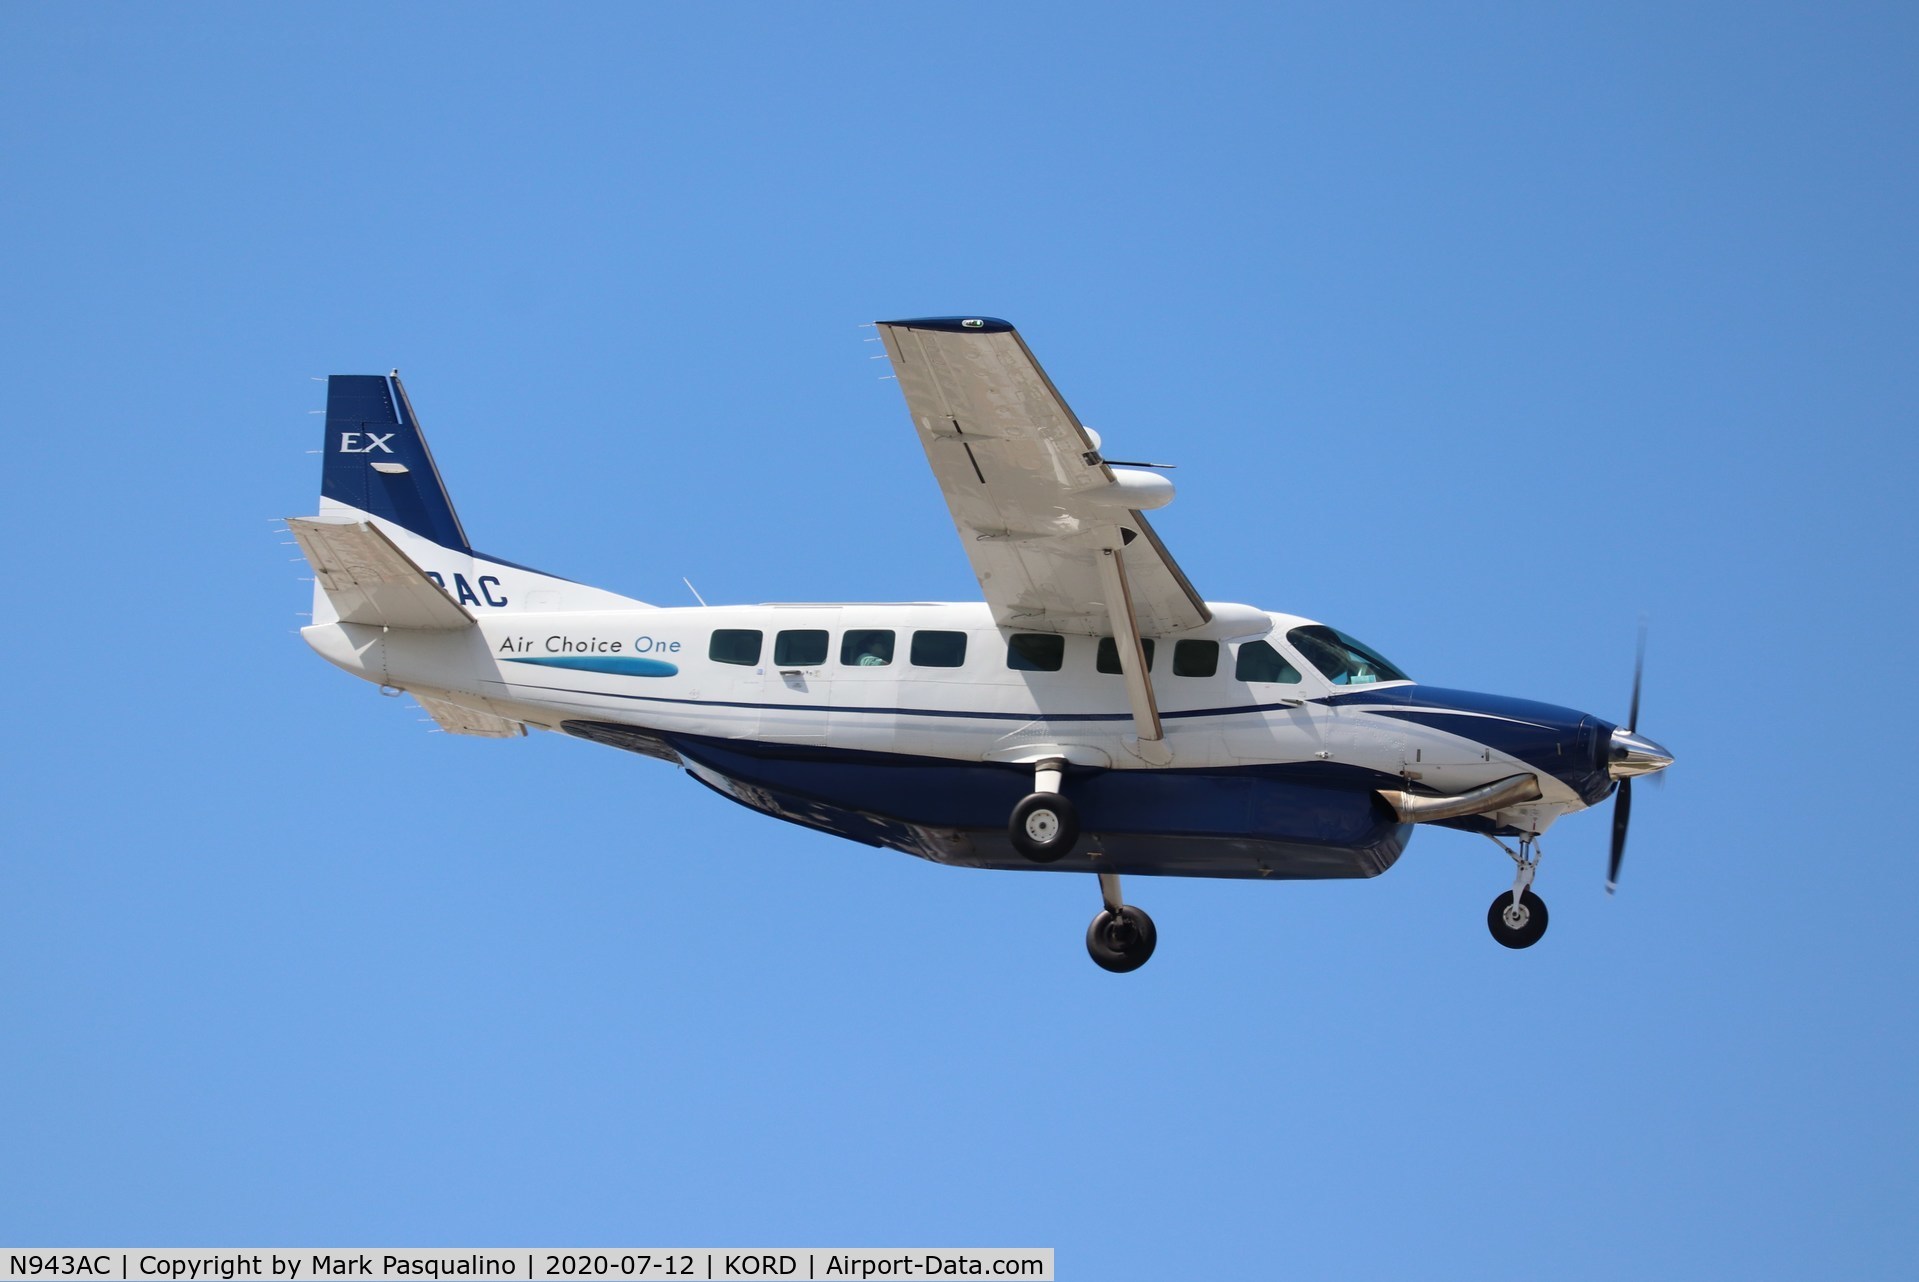 N943AC, 2015 Cessna 208B C/N 208B5239, Cessna 208B